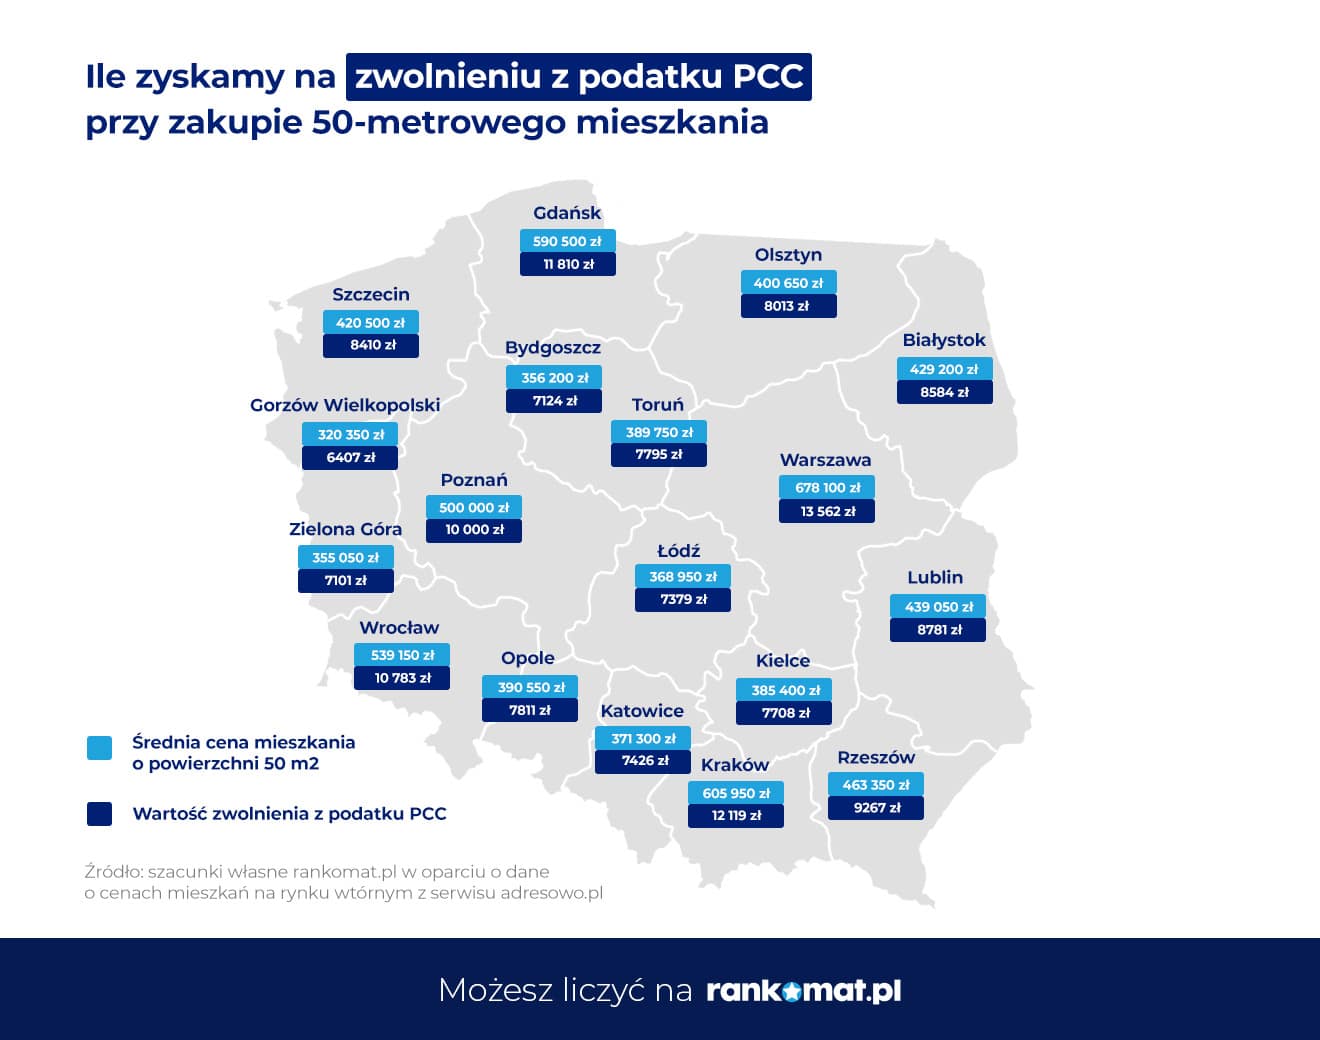 Rankomat.pl_ile zyskamy na zwolnieniu z podatku PCC_wersja poprawna